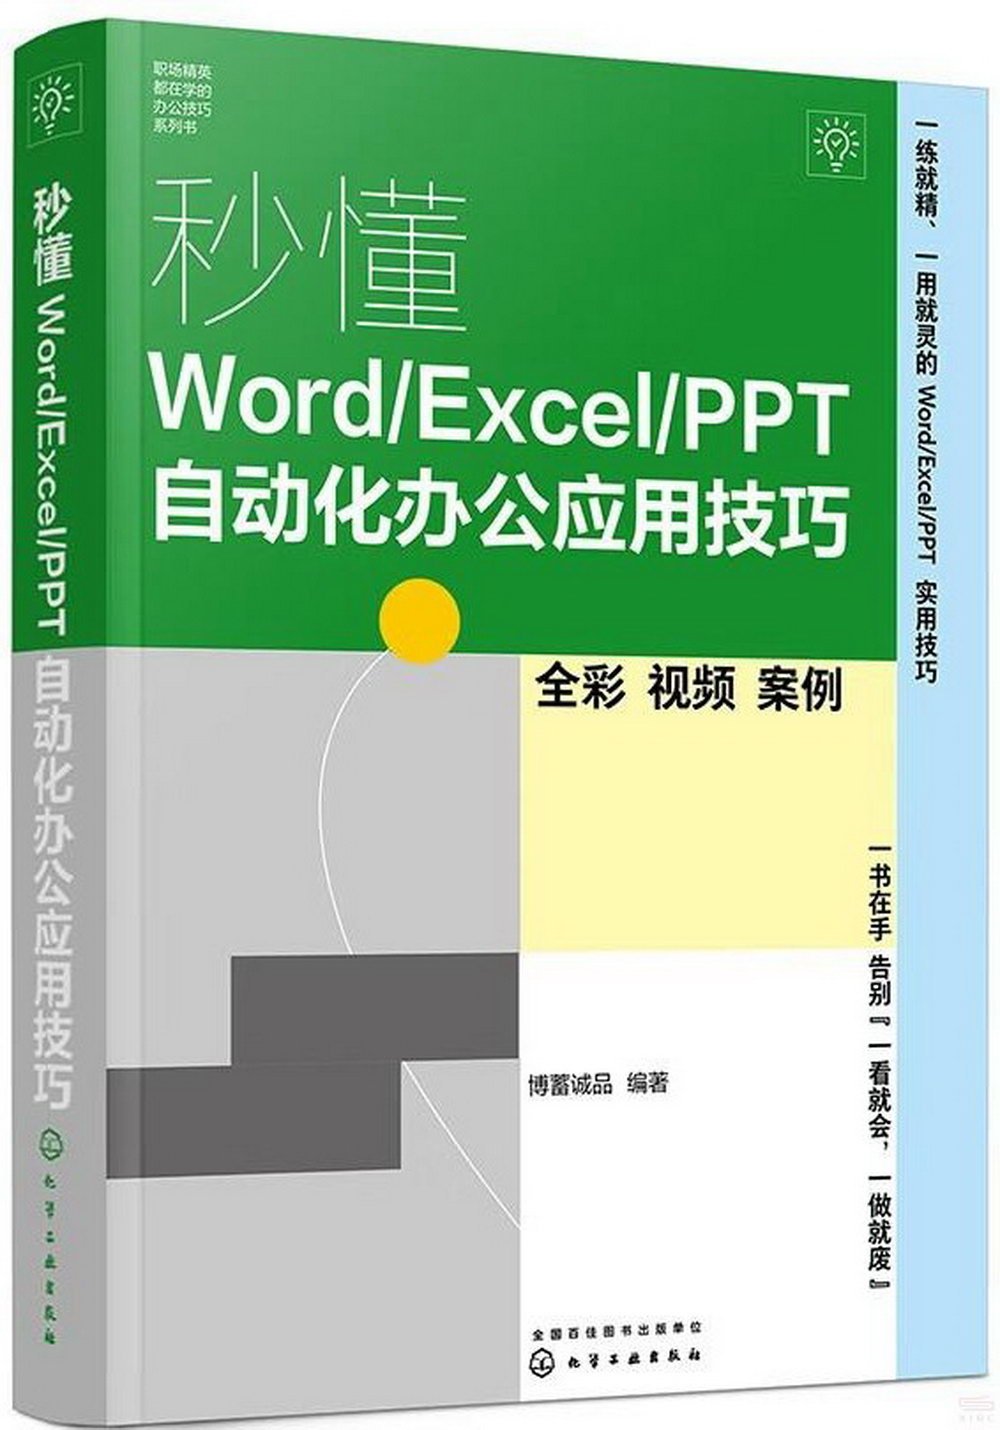 秒懂Word/Excel/PPT自動化辦公應用技巧